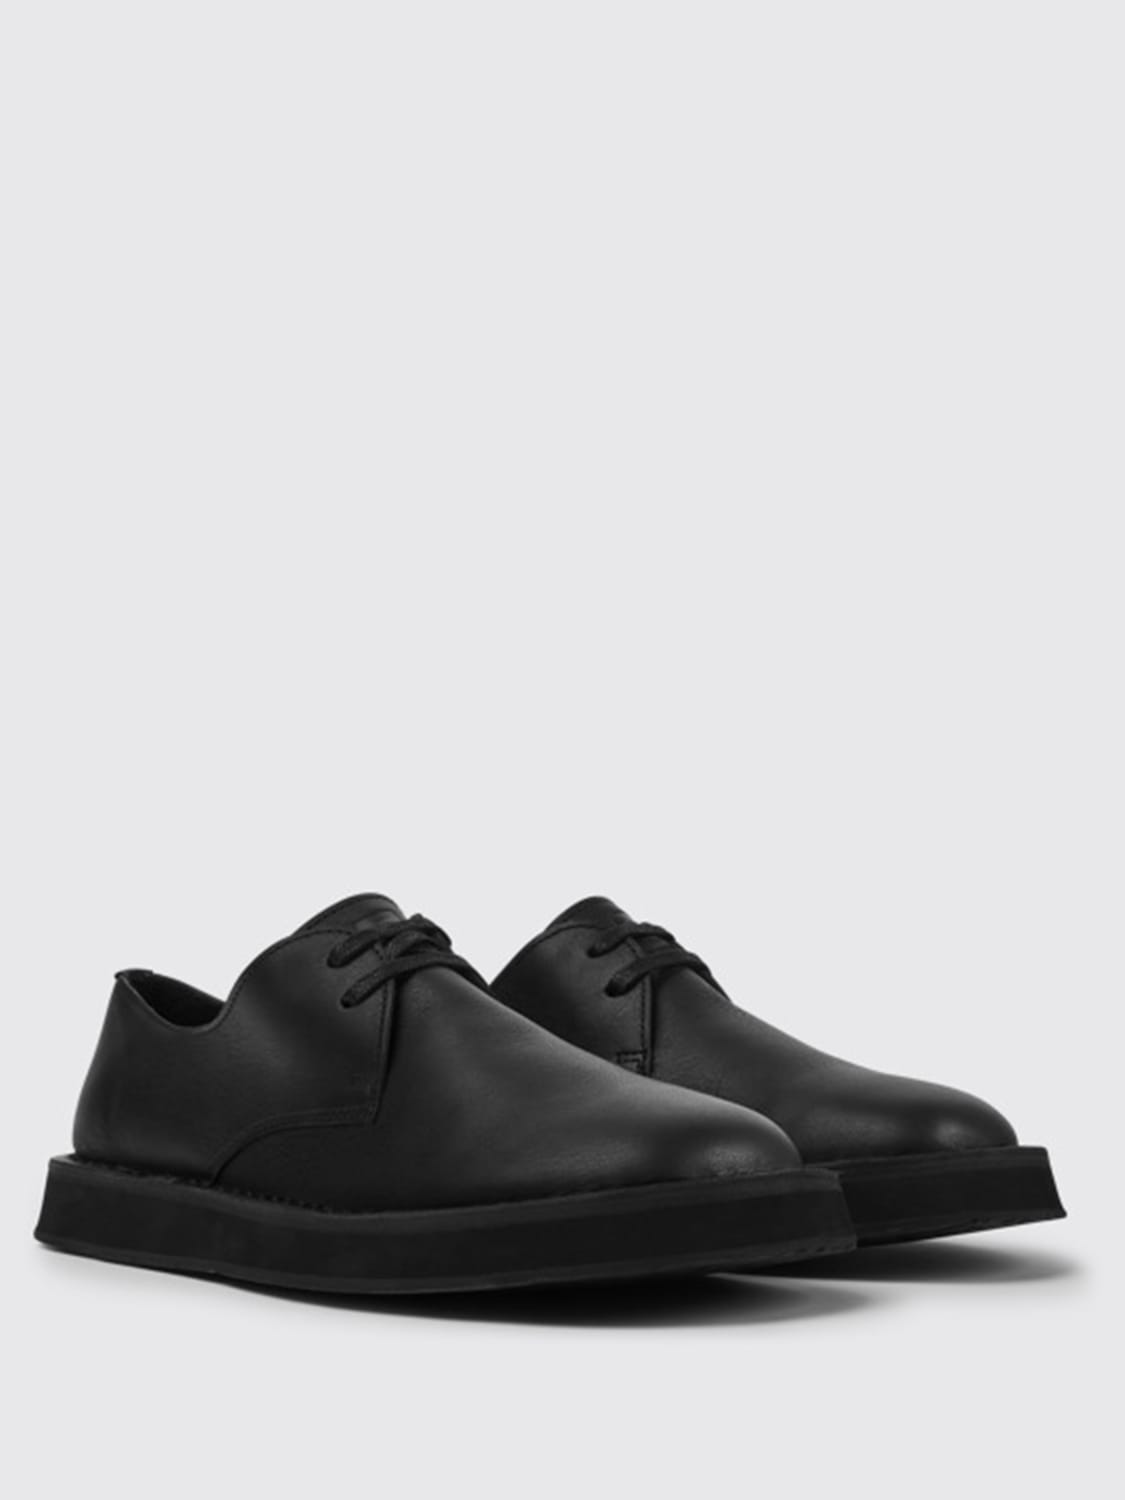 Camper Outlet: Brothers Polze shoes in calfskin - Black | Camper ...